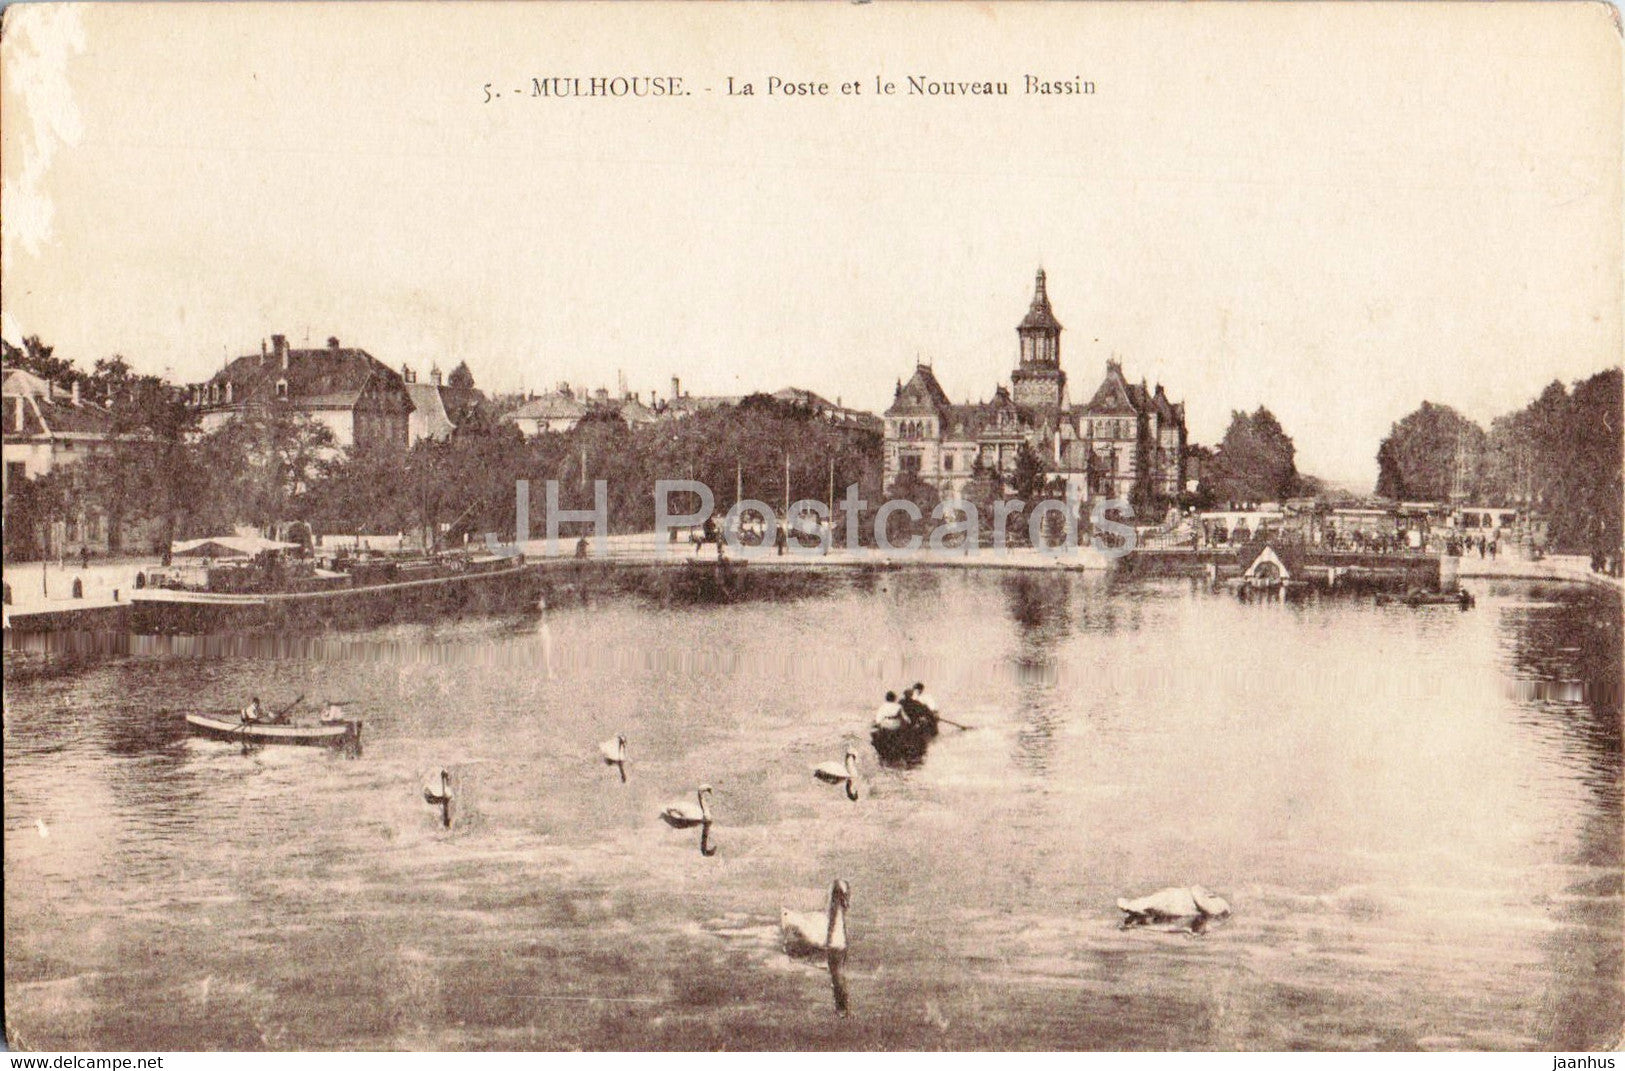 - La Poste et Nouveau Bassin - 5 - old - France - – JH Postcards